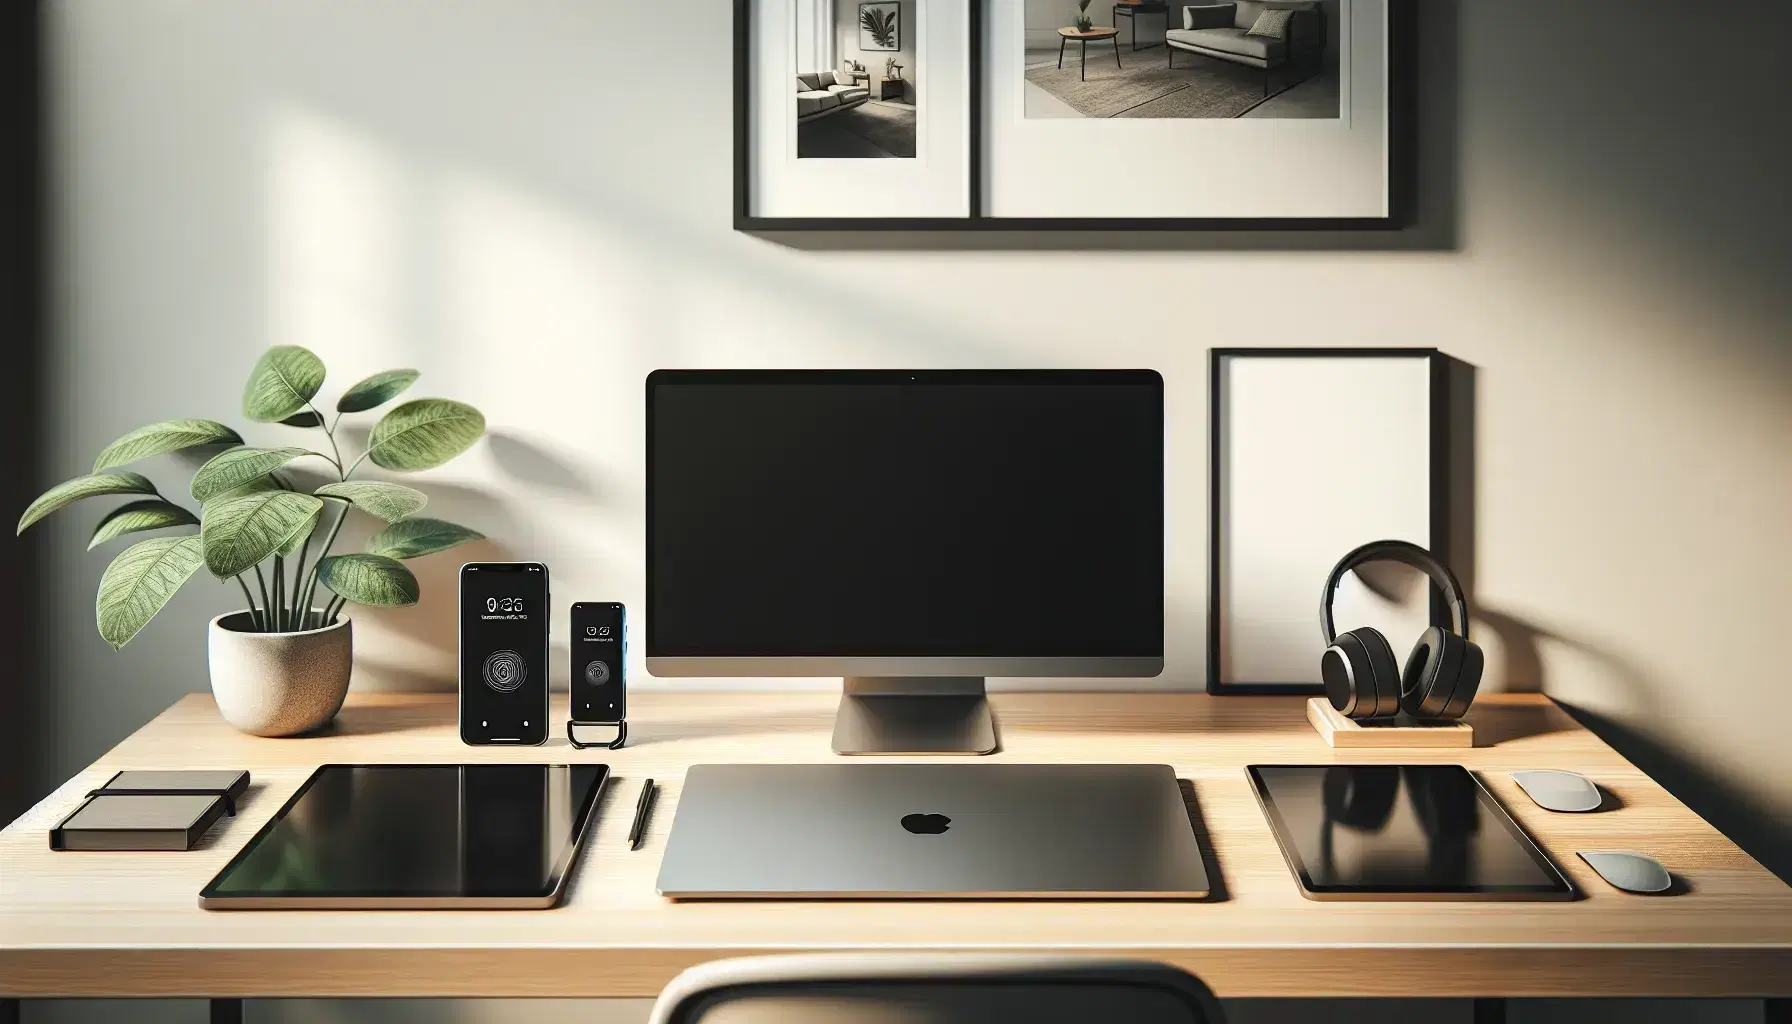 Escritorio moderno y limpio con laptop plateada, smartphone, tablet, monitor adicional, auriculares inalámbricos y planta en maceta blanca, en oficina con iluminación suave.